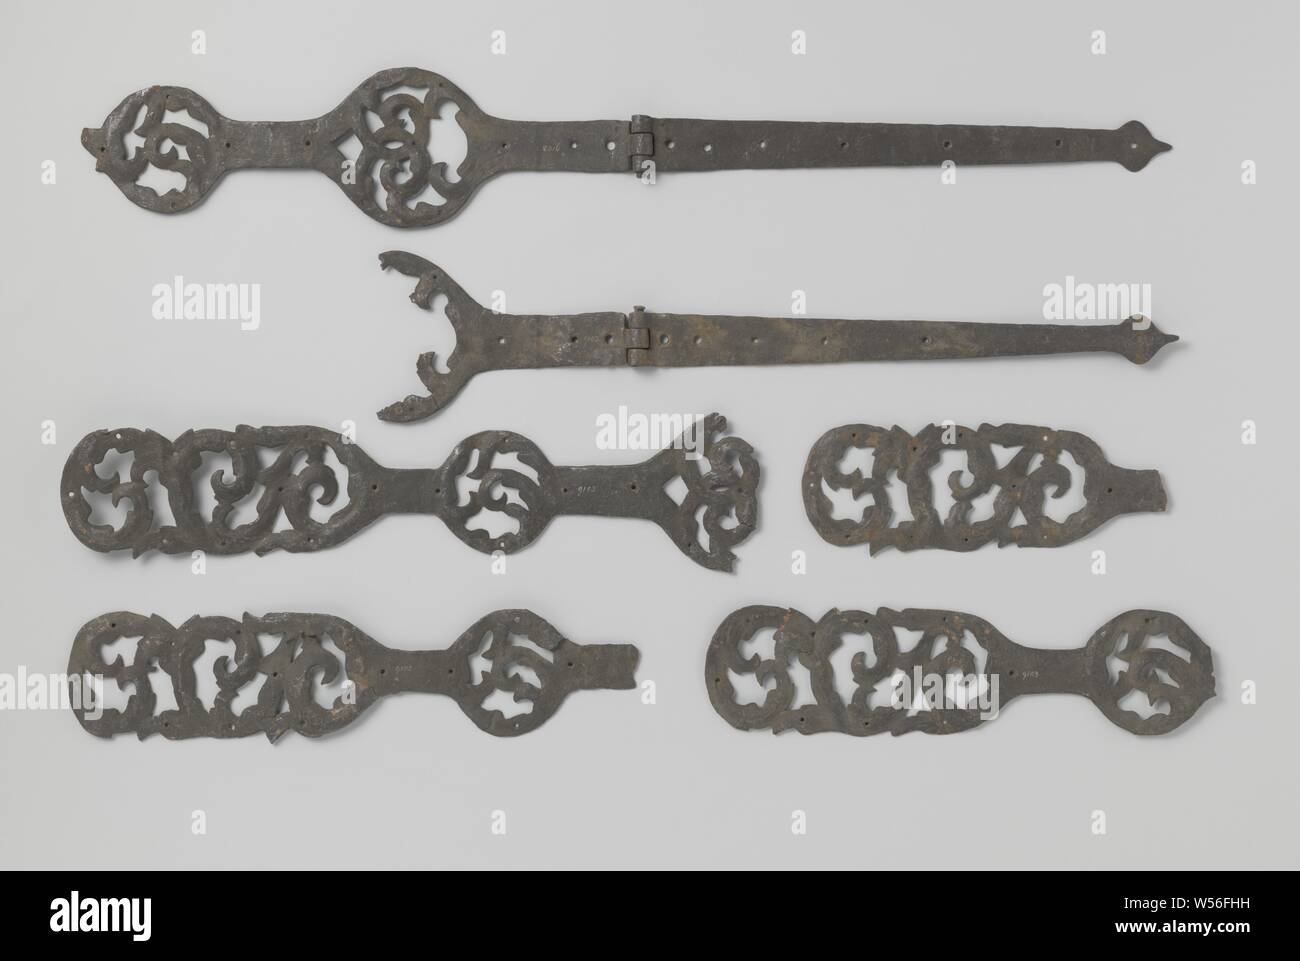 Sei parti di maniglie, c. 1400 - c. 1950, ferro (metallo), l 80 cm × h 13 cm × W 1 cm Foto Stock